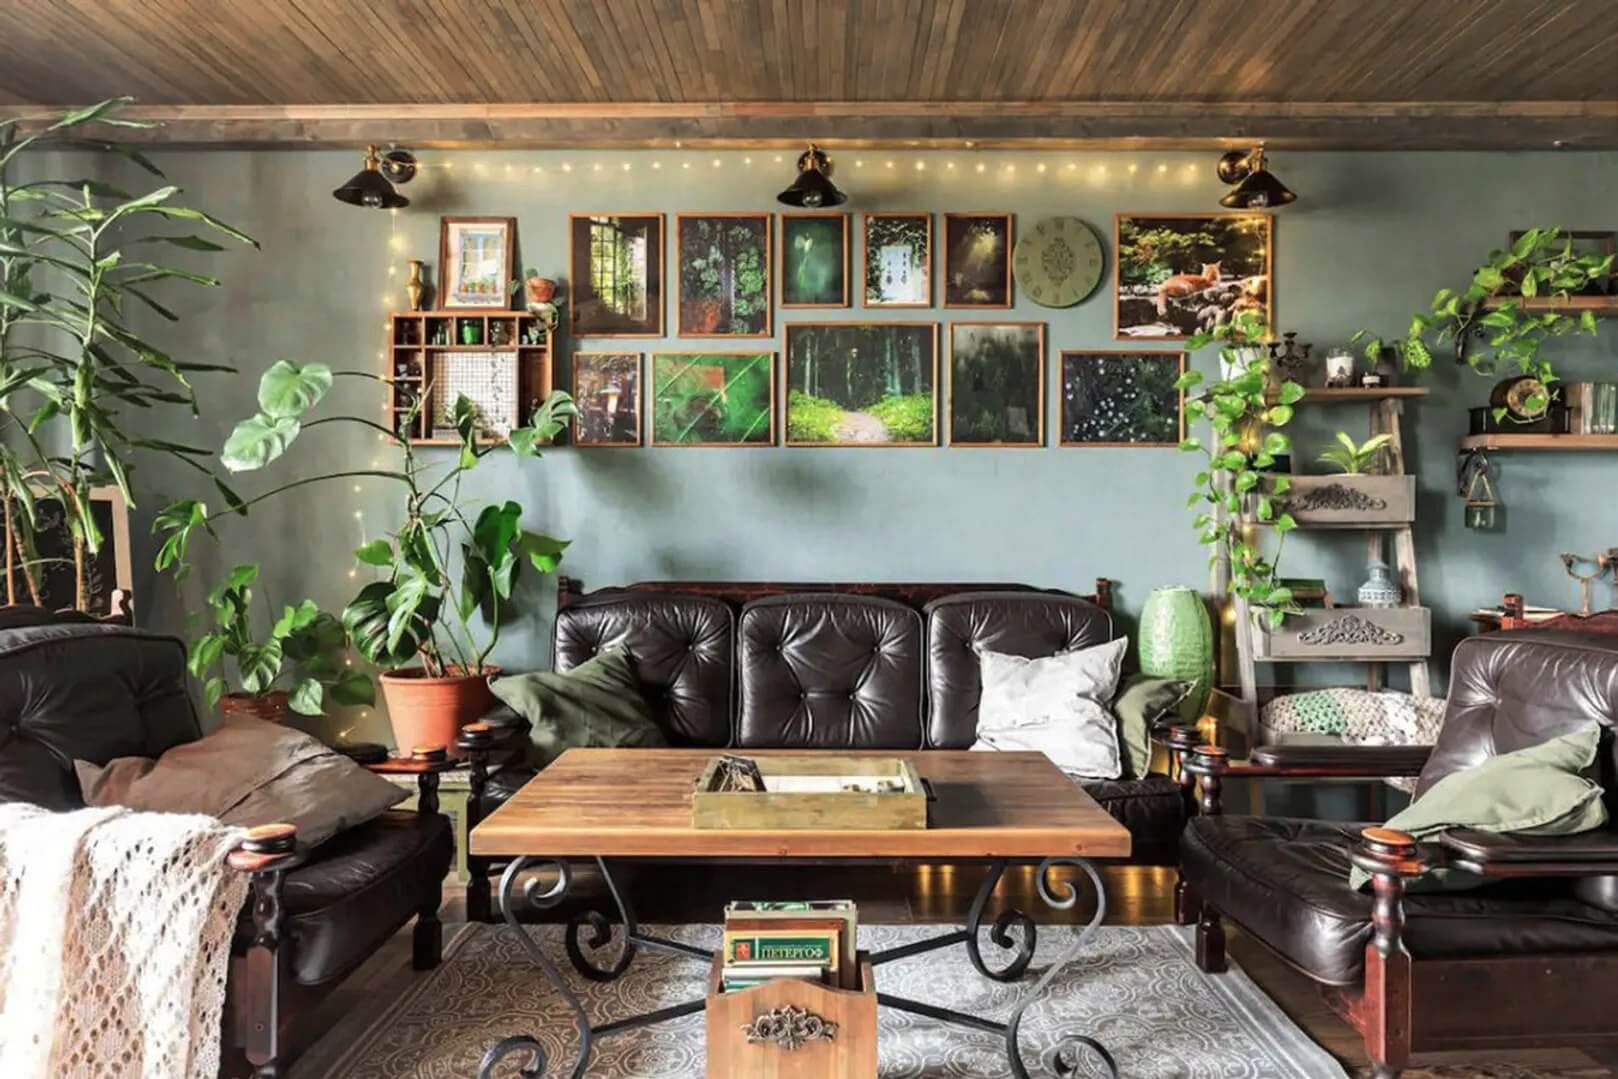 Зона отдыха: кожаные кресла, картины на стене и большое количество растений в горшках.